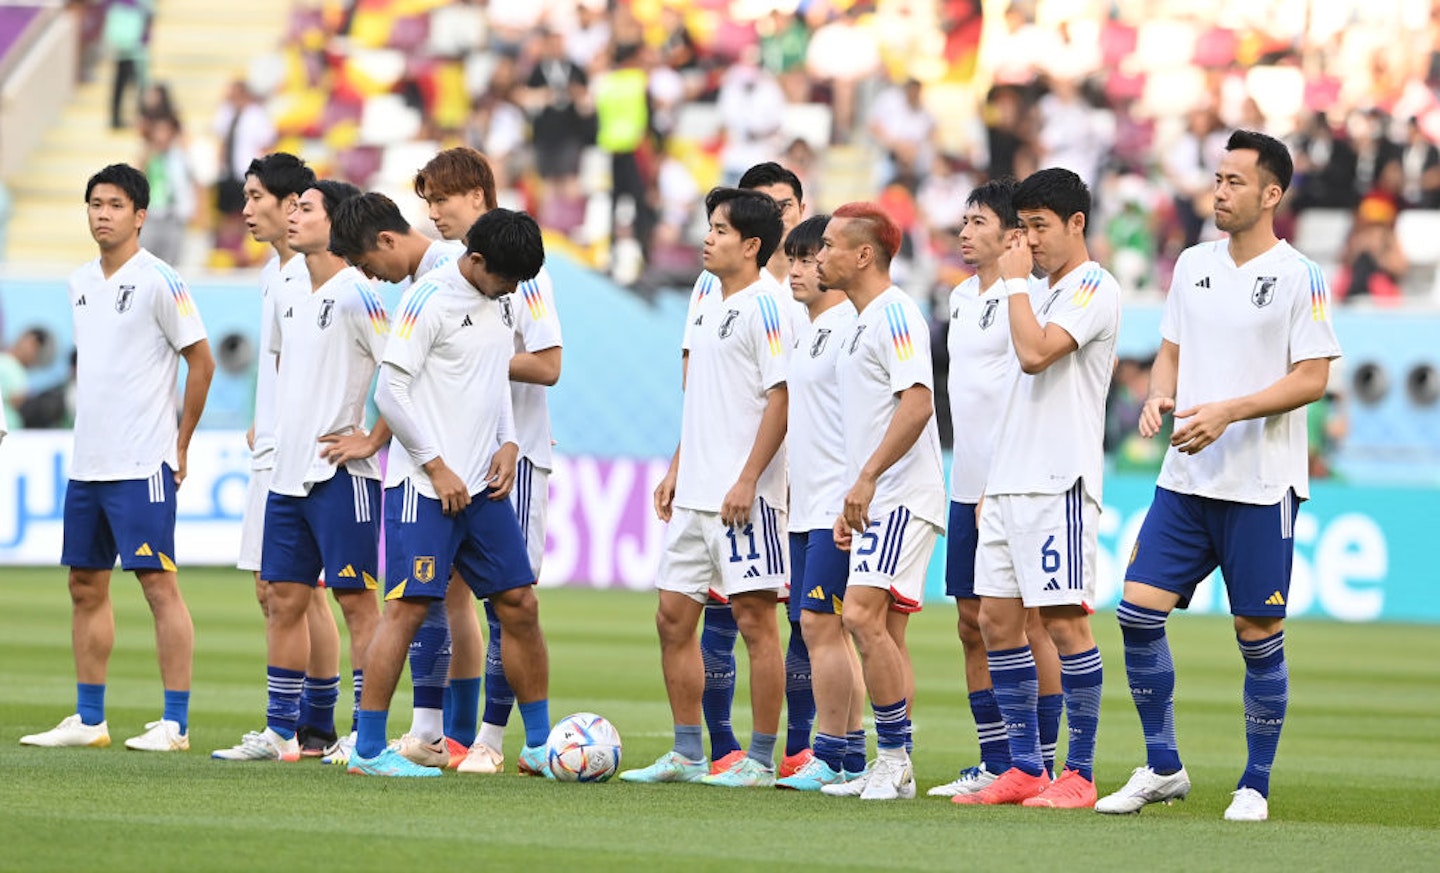 Japan team